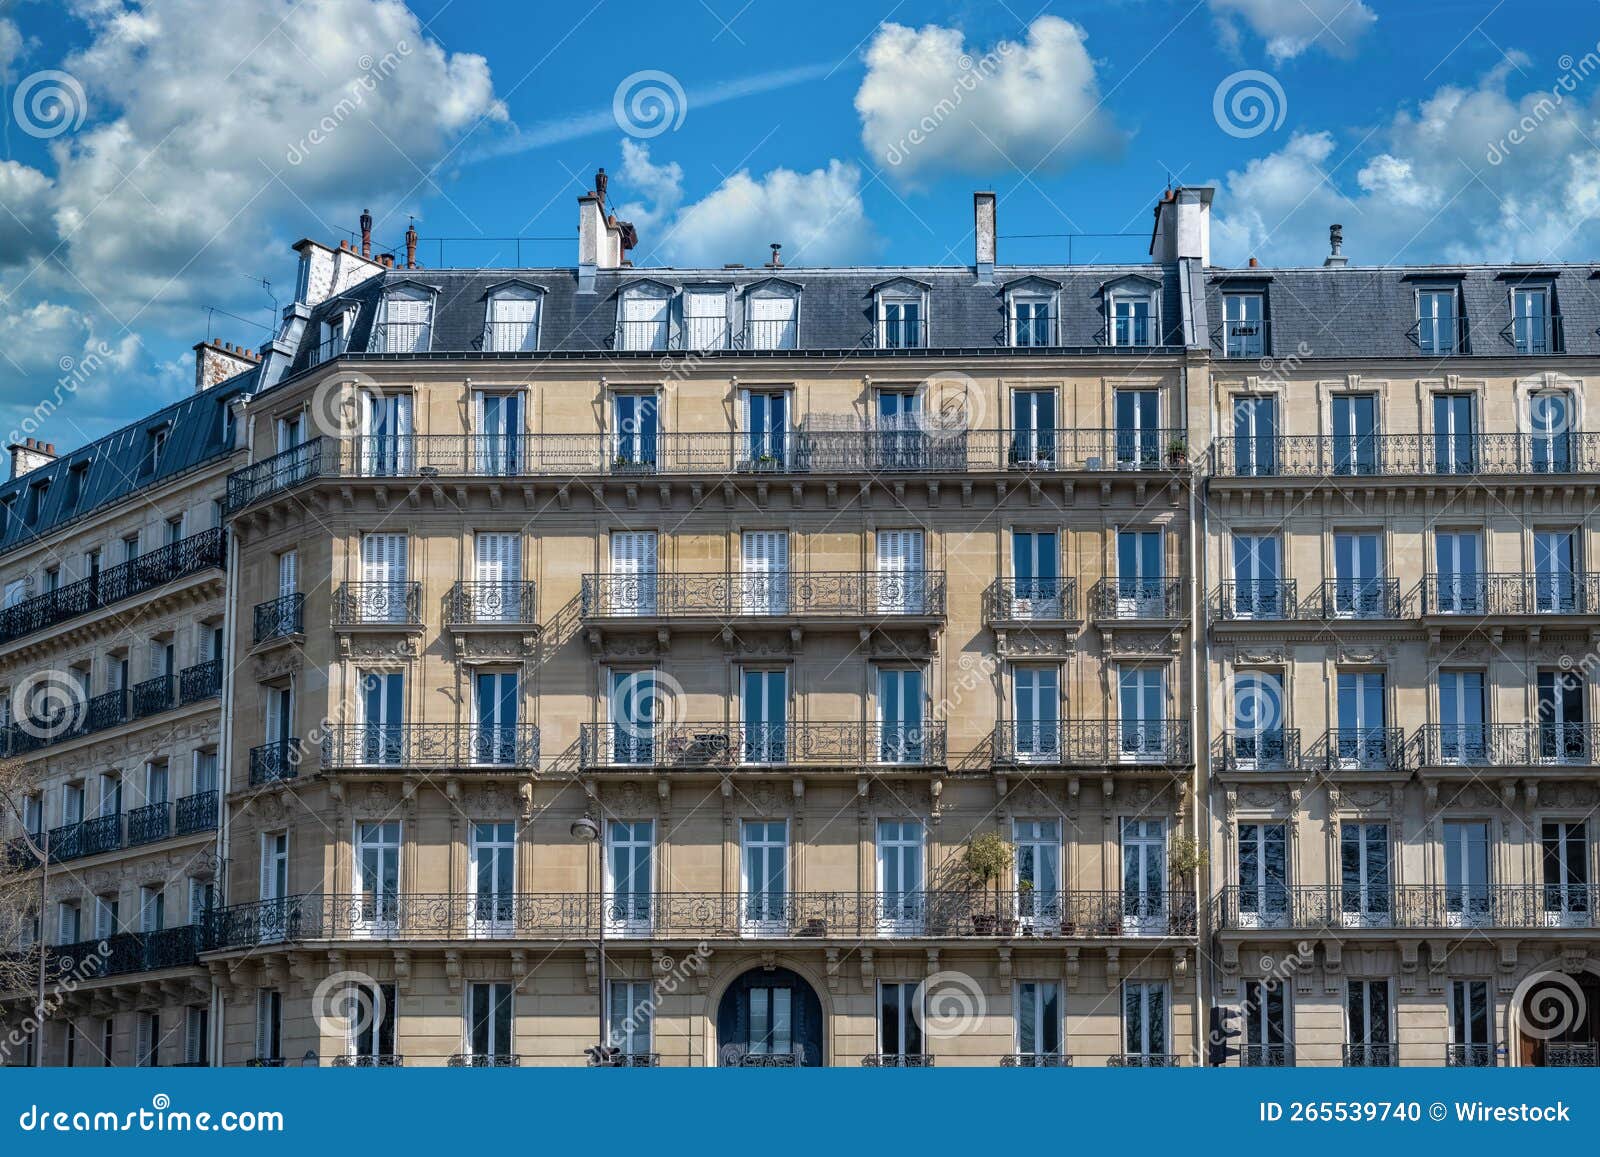 paris, luxury parisian facade